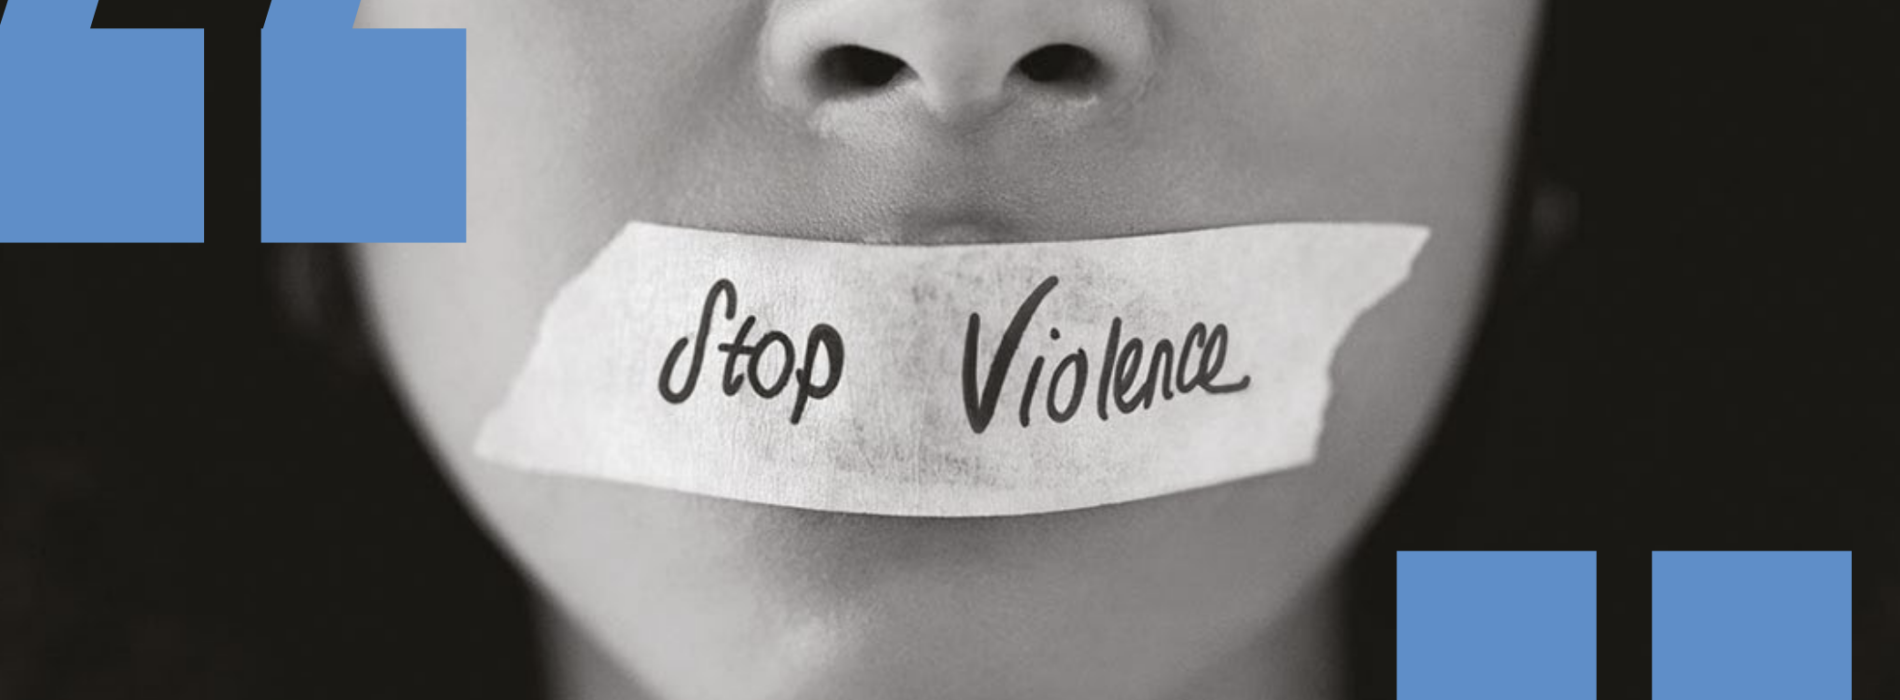 Stop violenza, a Giurisprudenza una giornata di sensibilizzazione